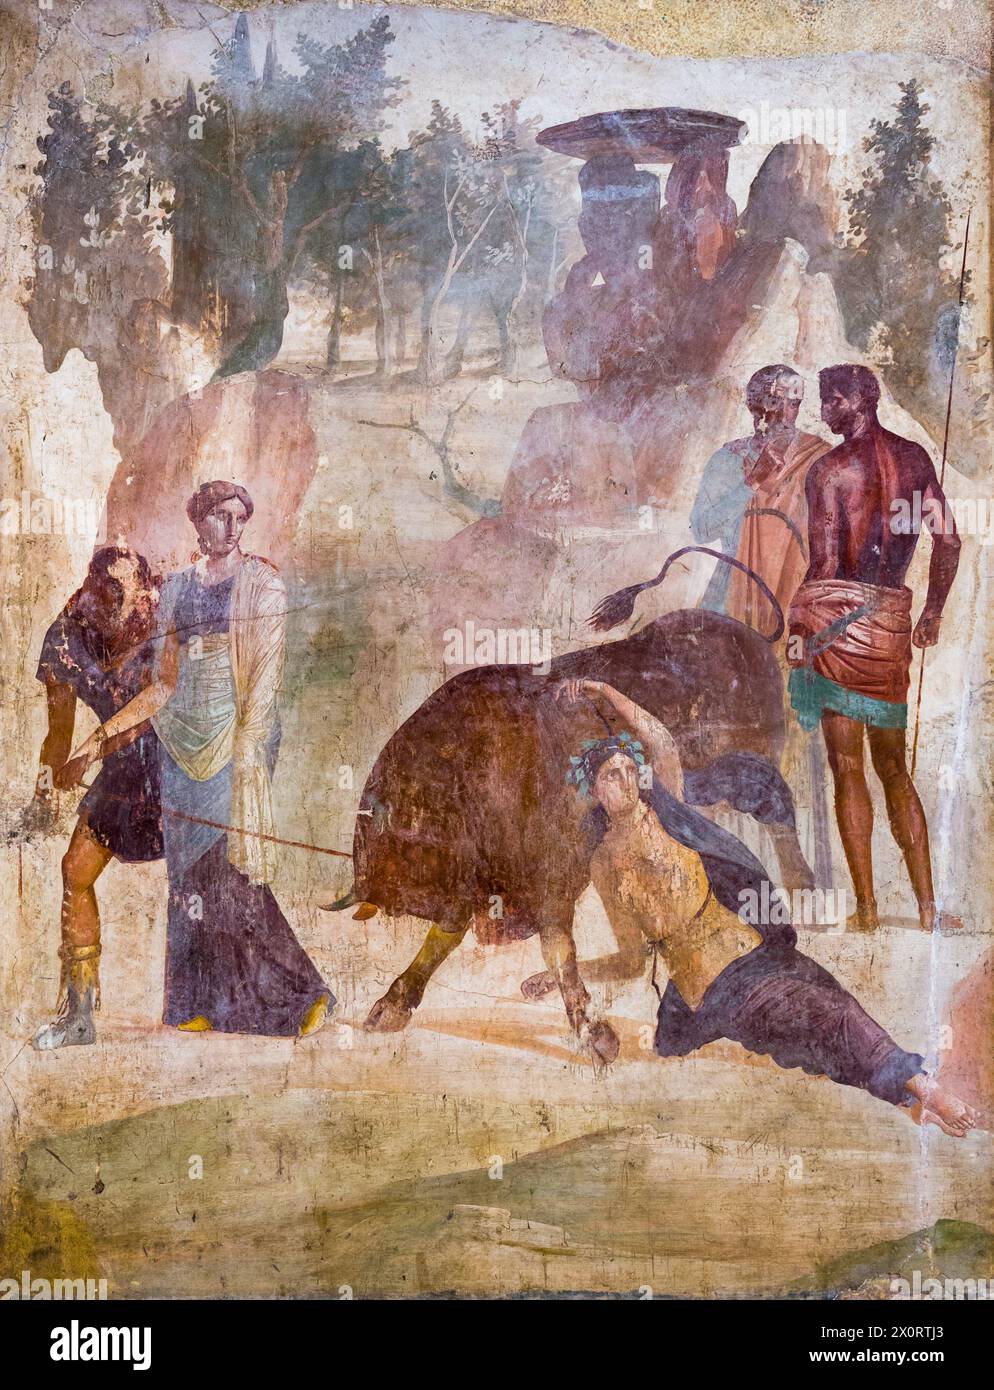 Dirce, lié aux cornes d'un taureau sauvage par Amphion et Zethus (en présence de leur mère Antiope), est puni pour avoir maltraité Antiope. Fresque antique de Pompéi. Banque D'Images